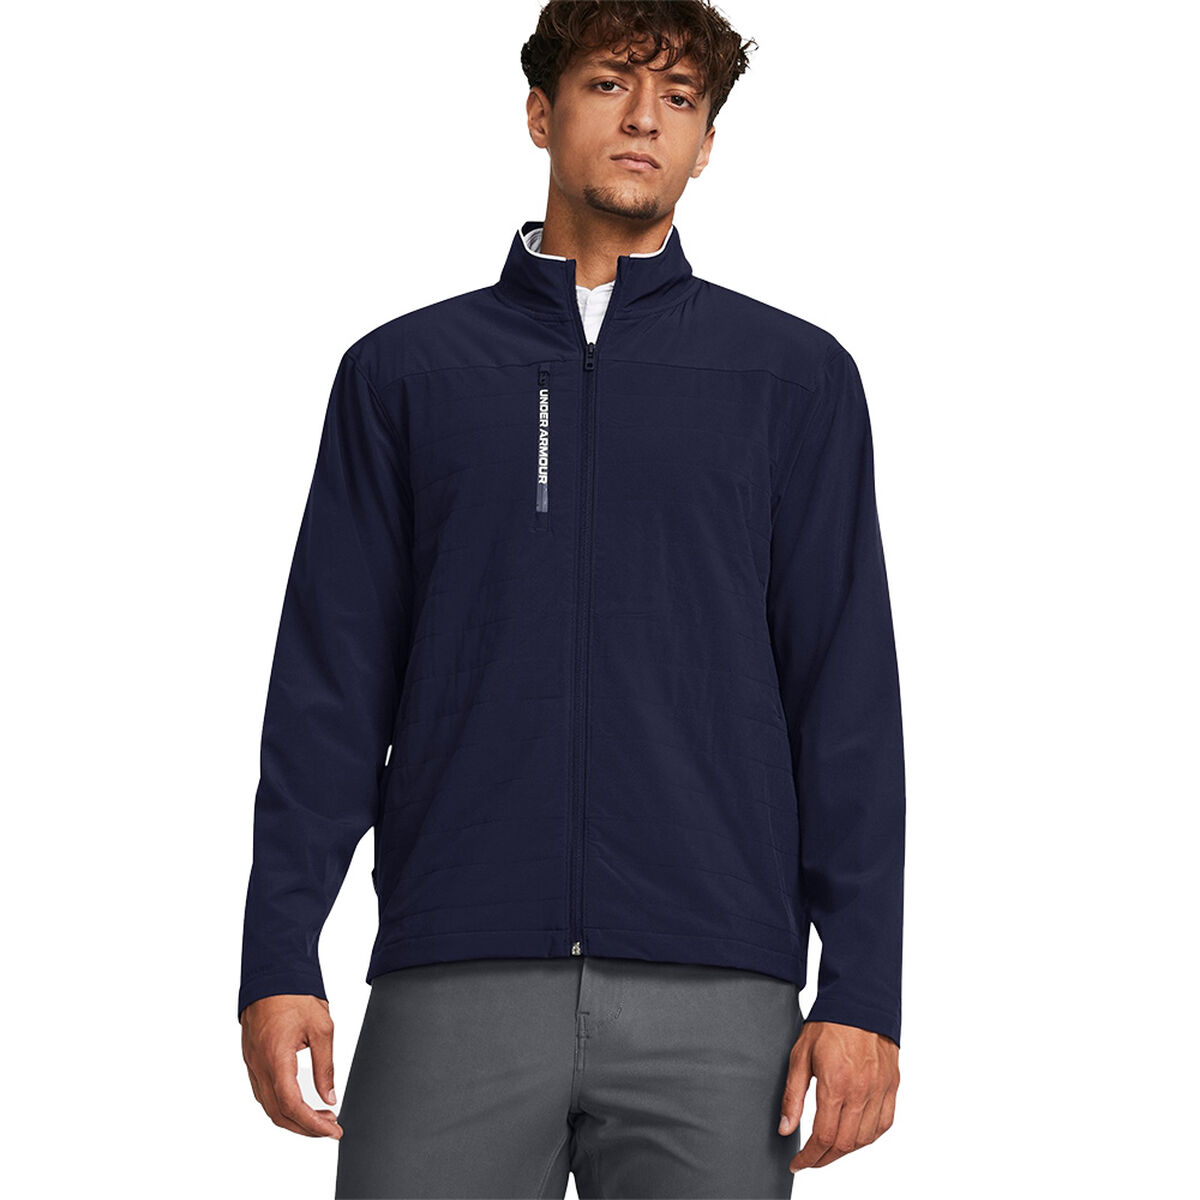 Under Armour Men’s Storm Revo Full-Zip Golf Jacket, Mens, Midnight navy/white, Medium | American Golf